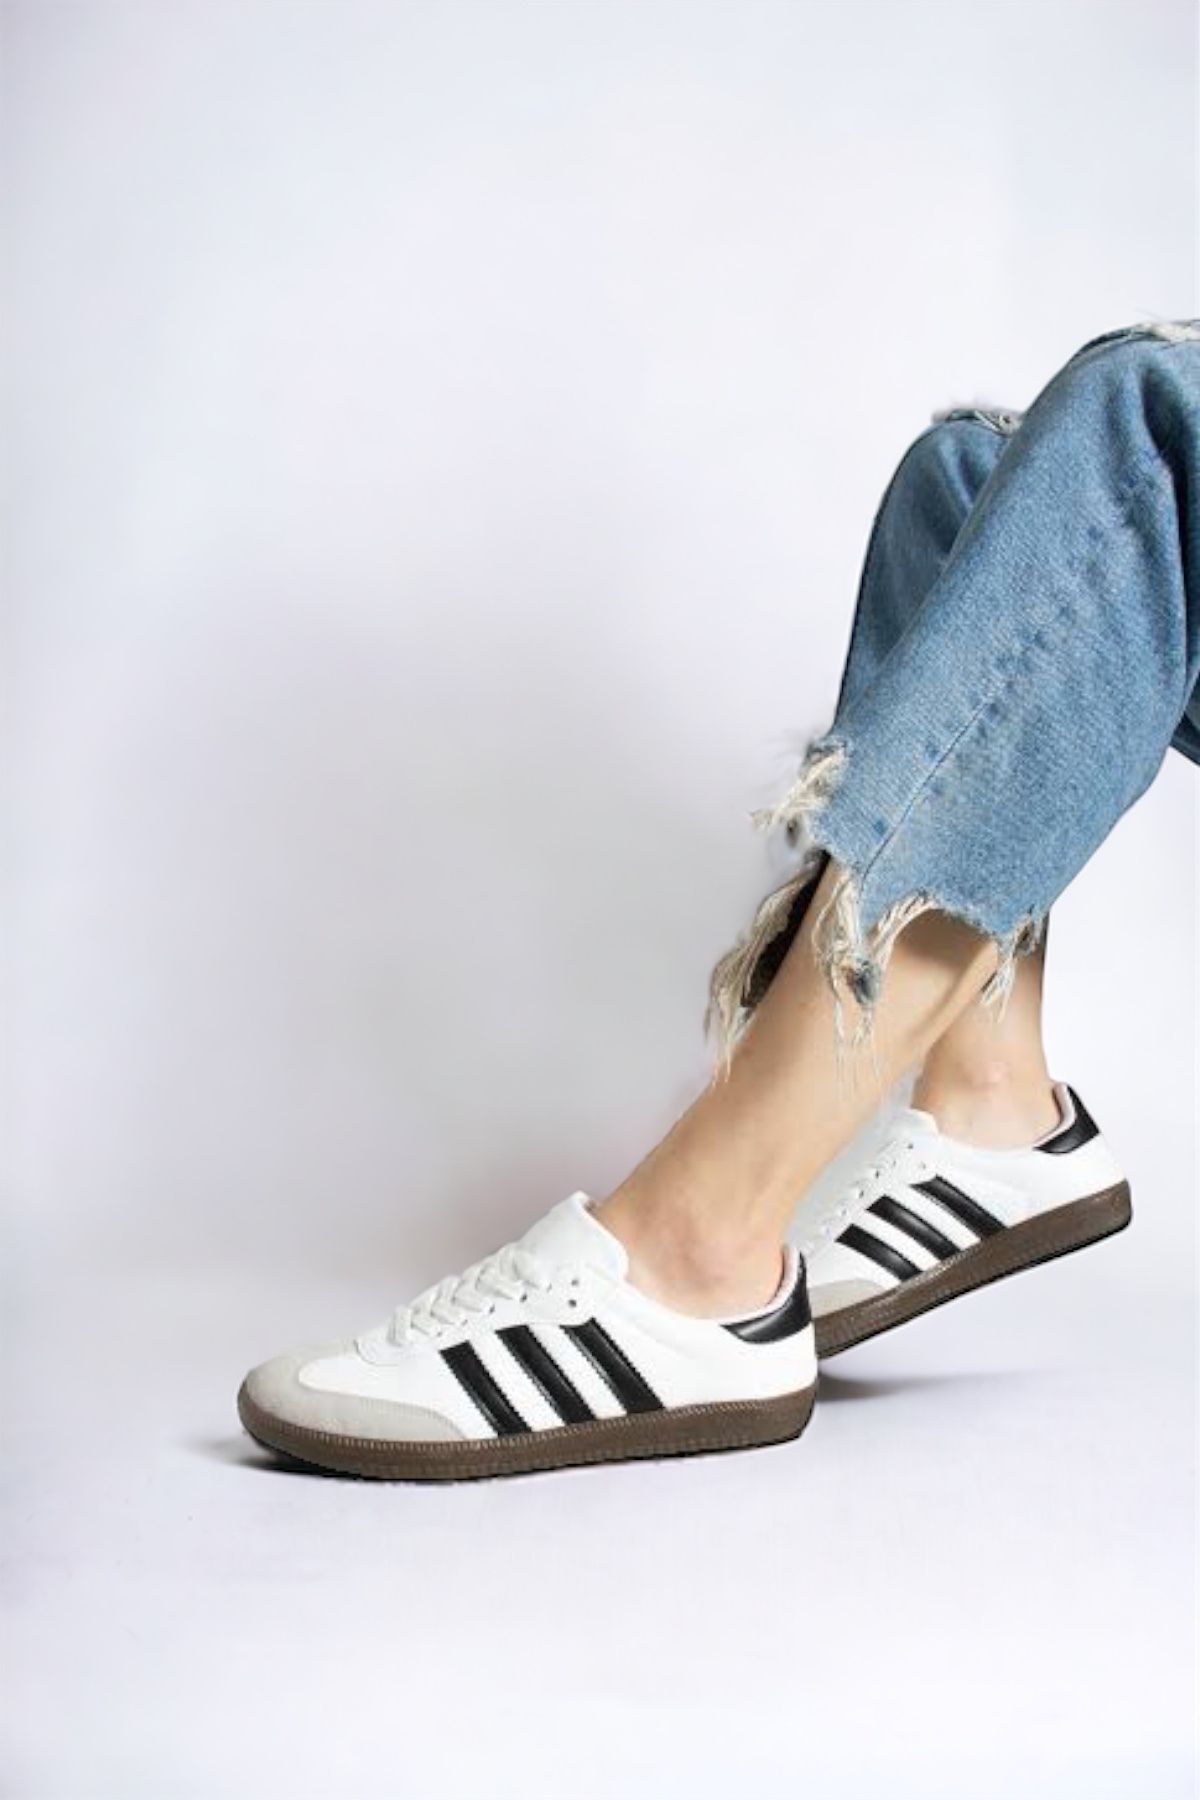 LANDSHOES Beyaz-Siyah Çizgili Düz taban bağçıklı spor ayakkabı